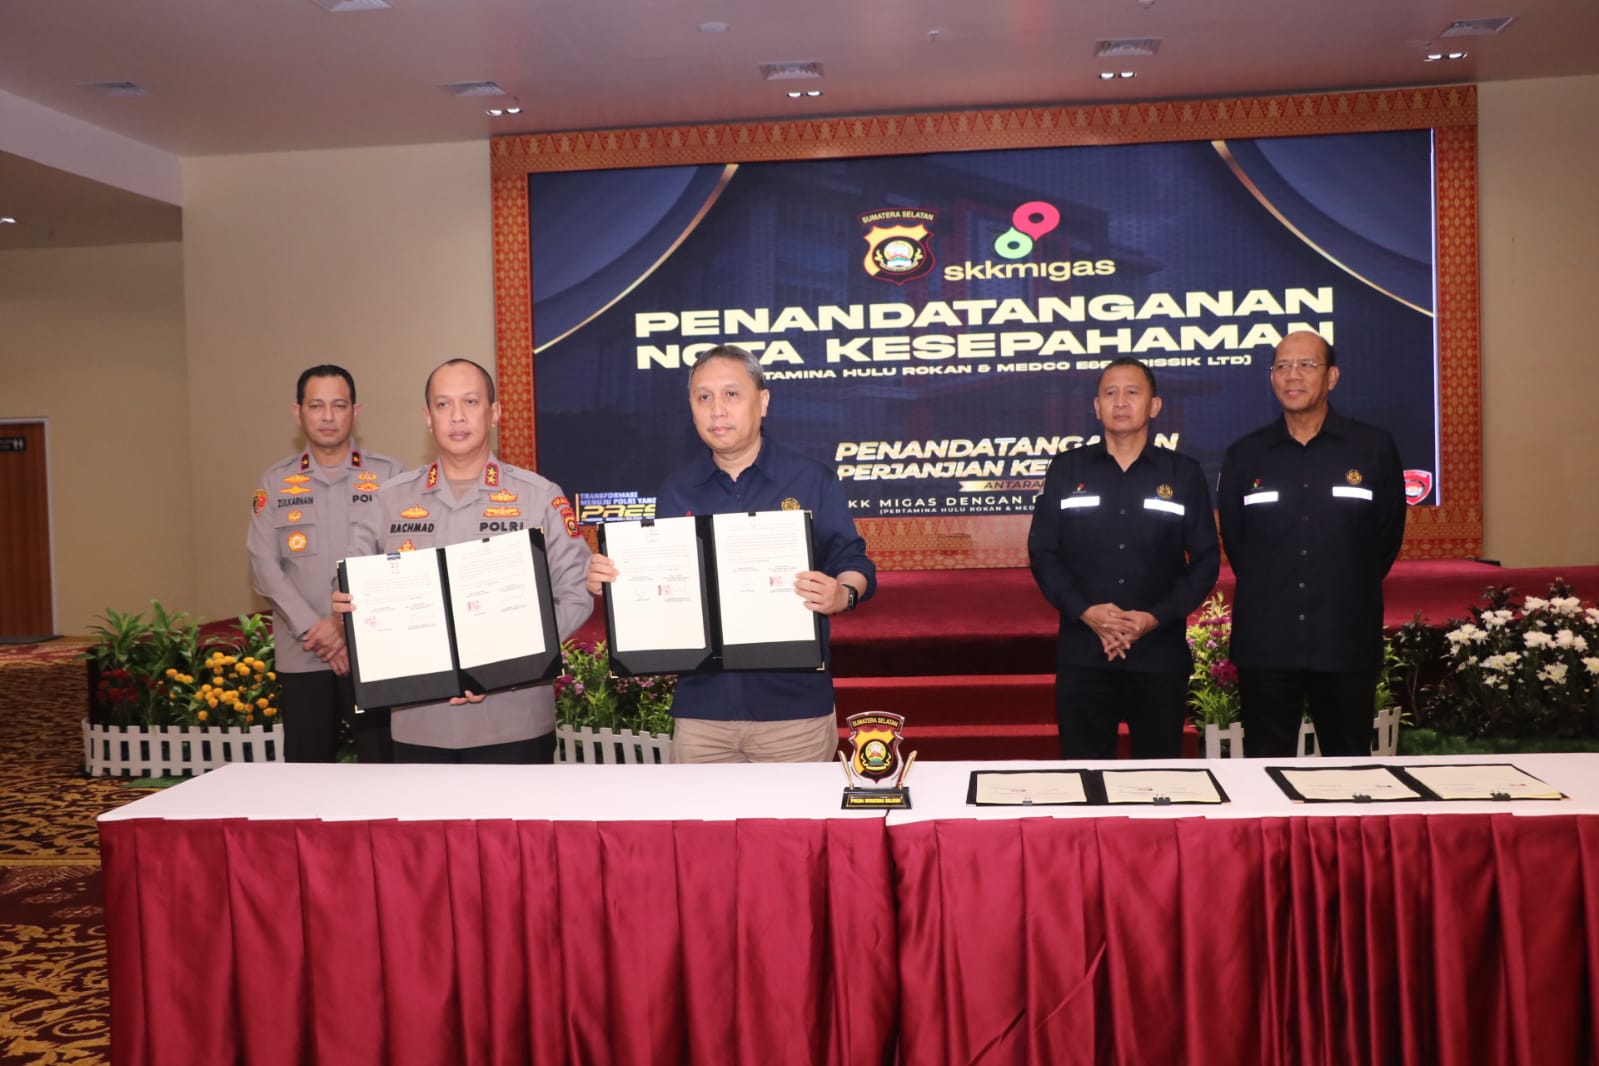 Tingkatkan Pengamanan Obvitnas Hulu Migas di Sumsel, SKK Migas dan Polda Sumsel Lakukan Penandatanganan PKS